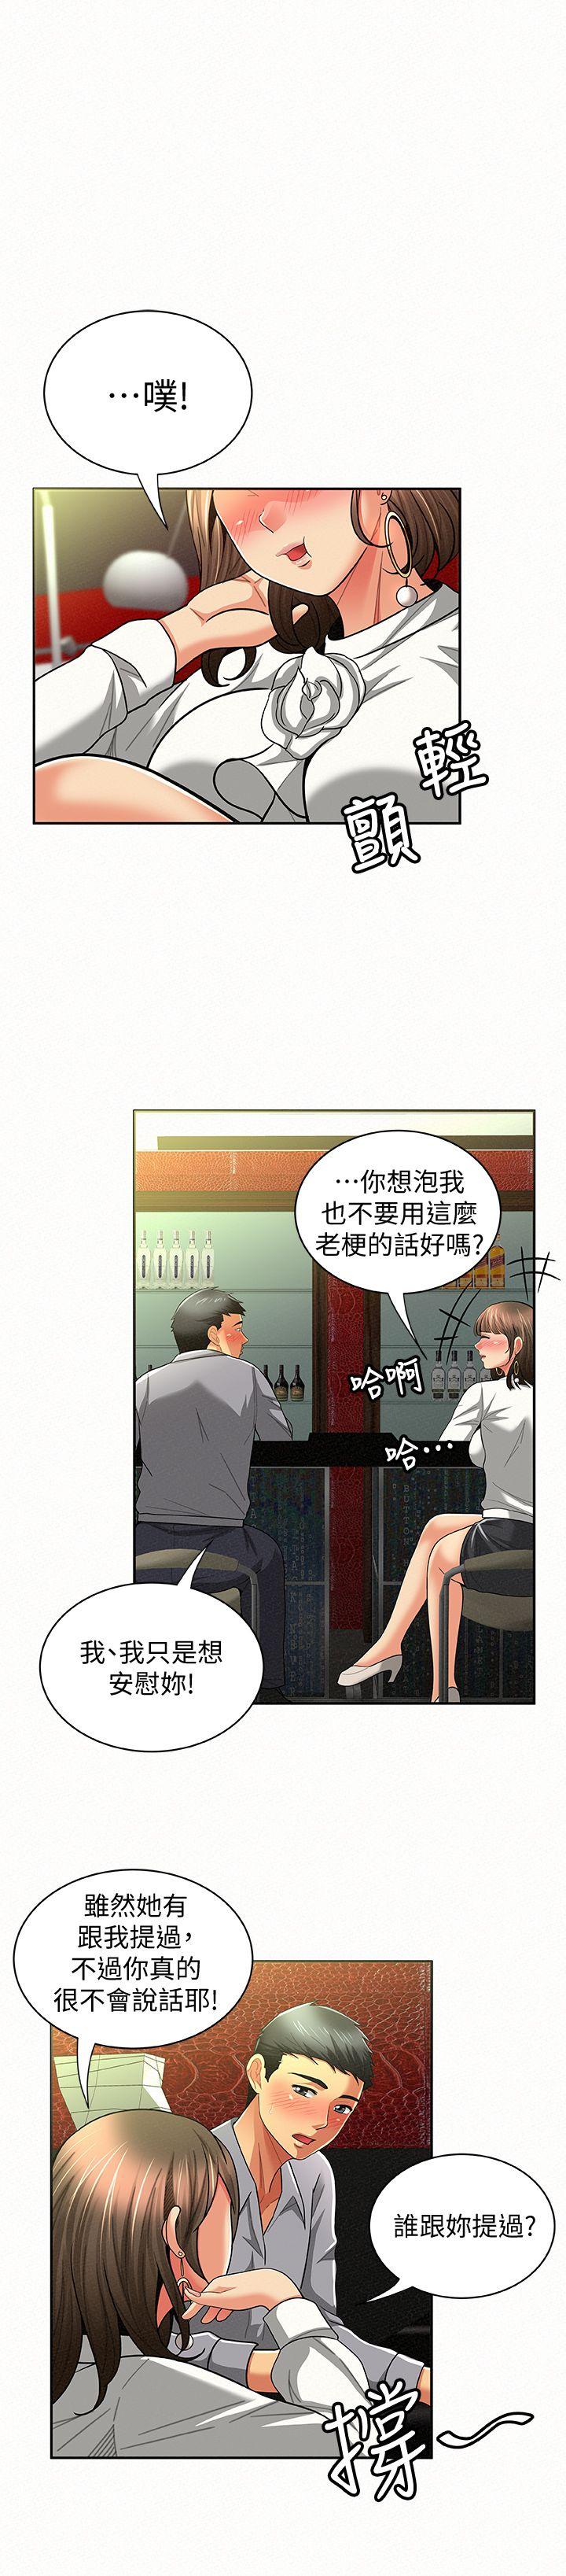 韩国污漫画 報告夫人 第14话-听说你很行? 22